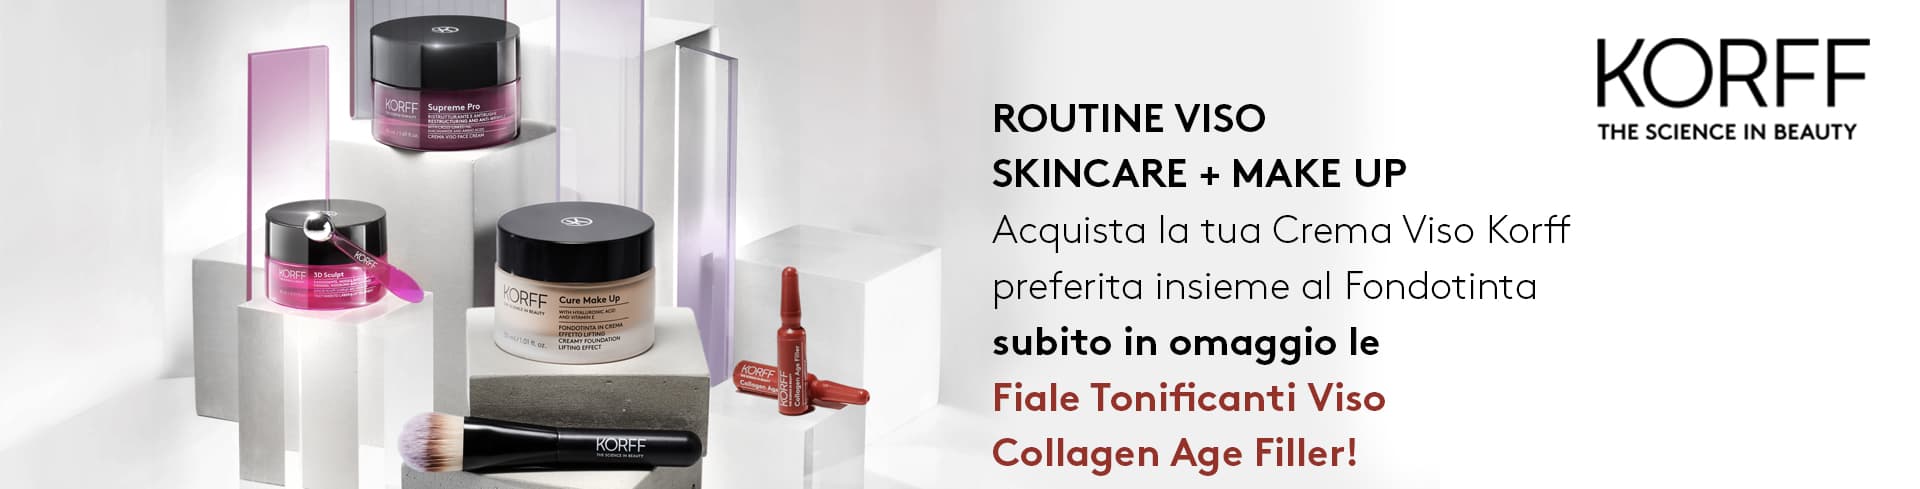 banner promozionale Korff Fiale Tonificanti Viso Collagen Age Filler omaggio desktop